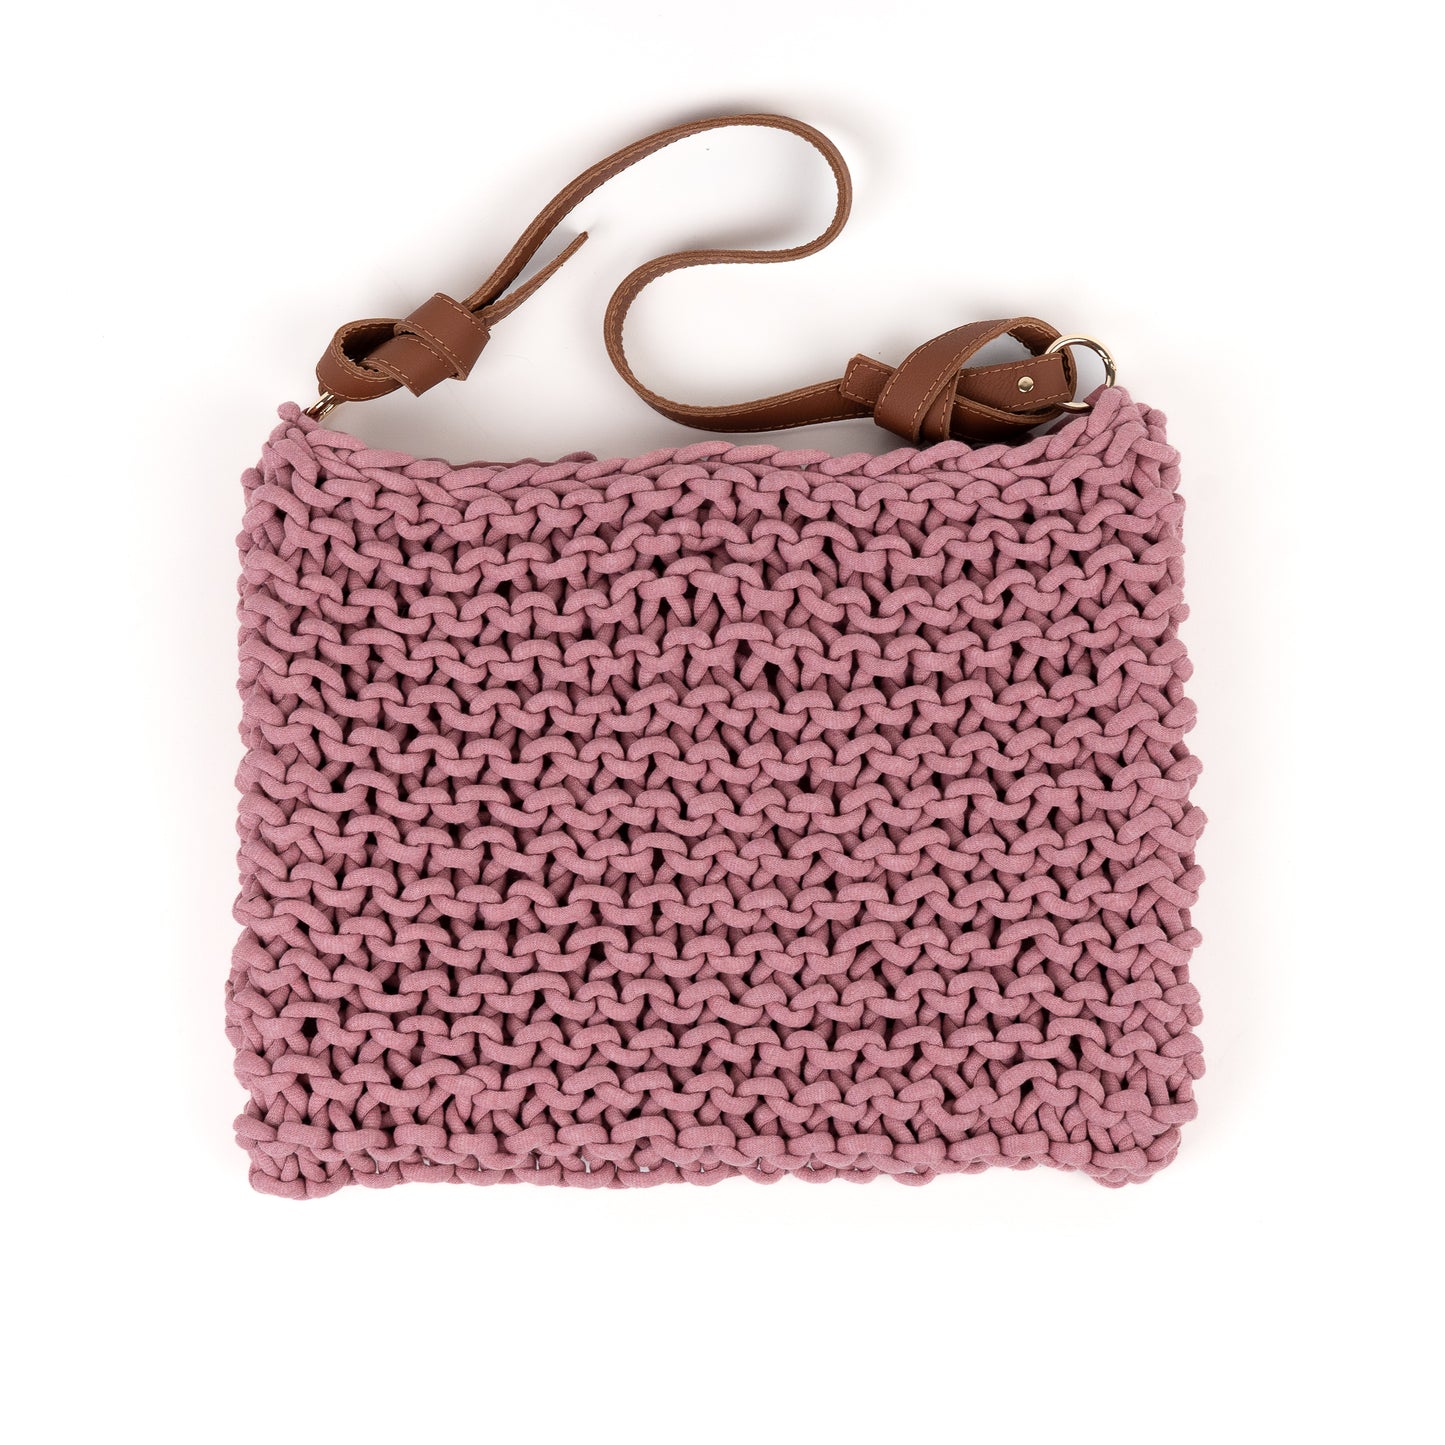 Crochet Winter Hobo Bag